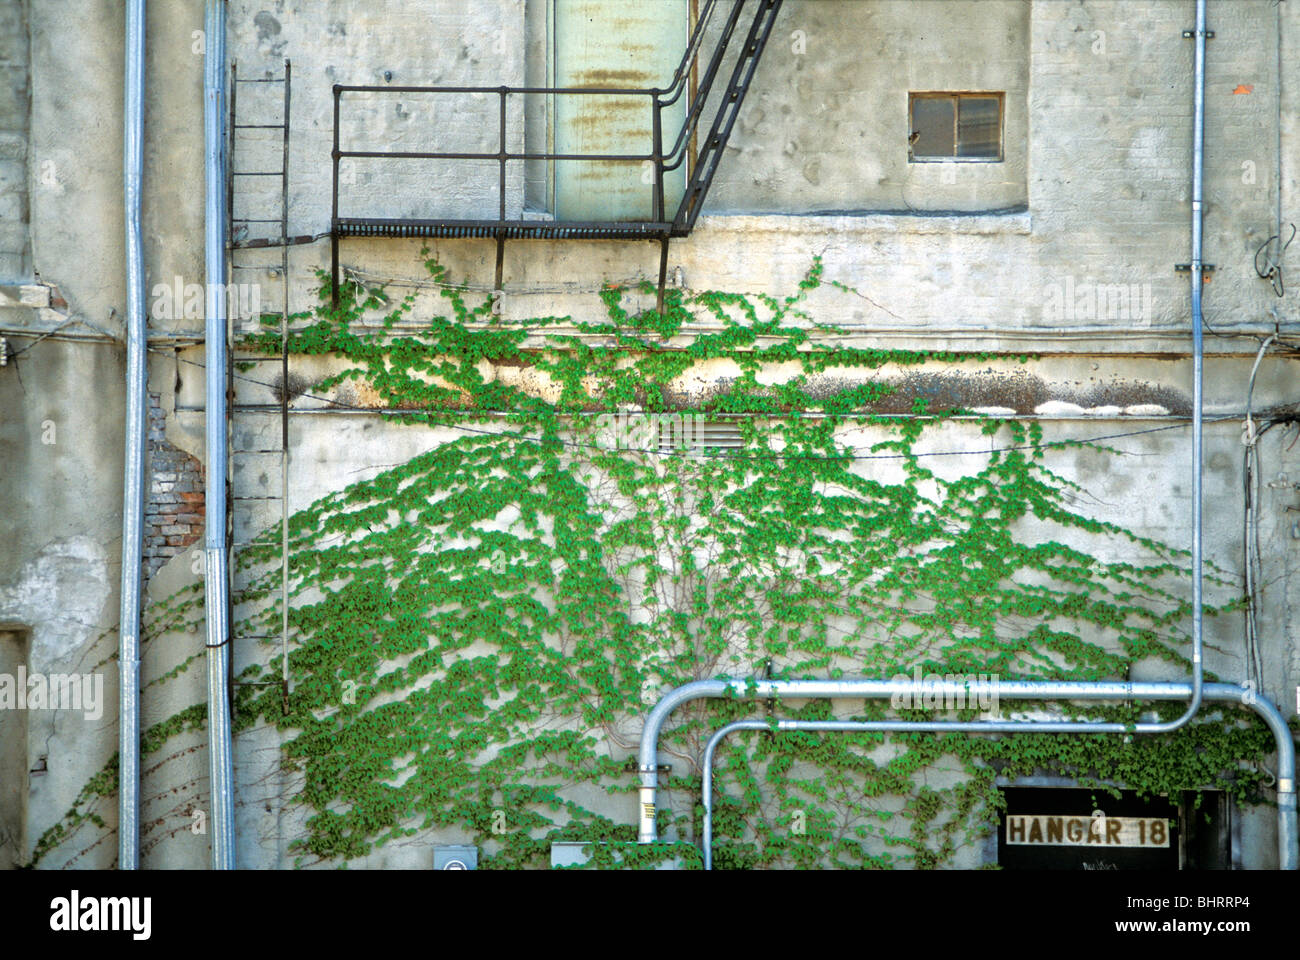 Reben wachsen auf der Wand eines Gebäudes in einer Gasse. Stockfoto